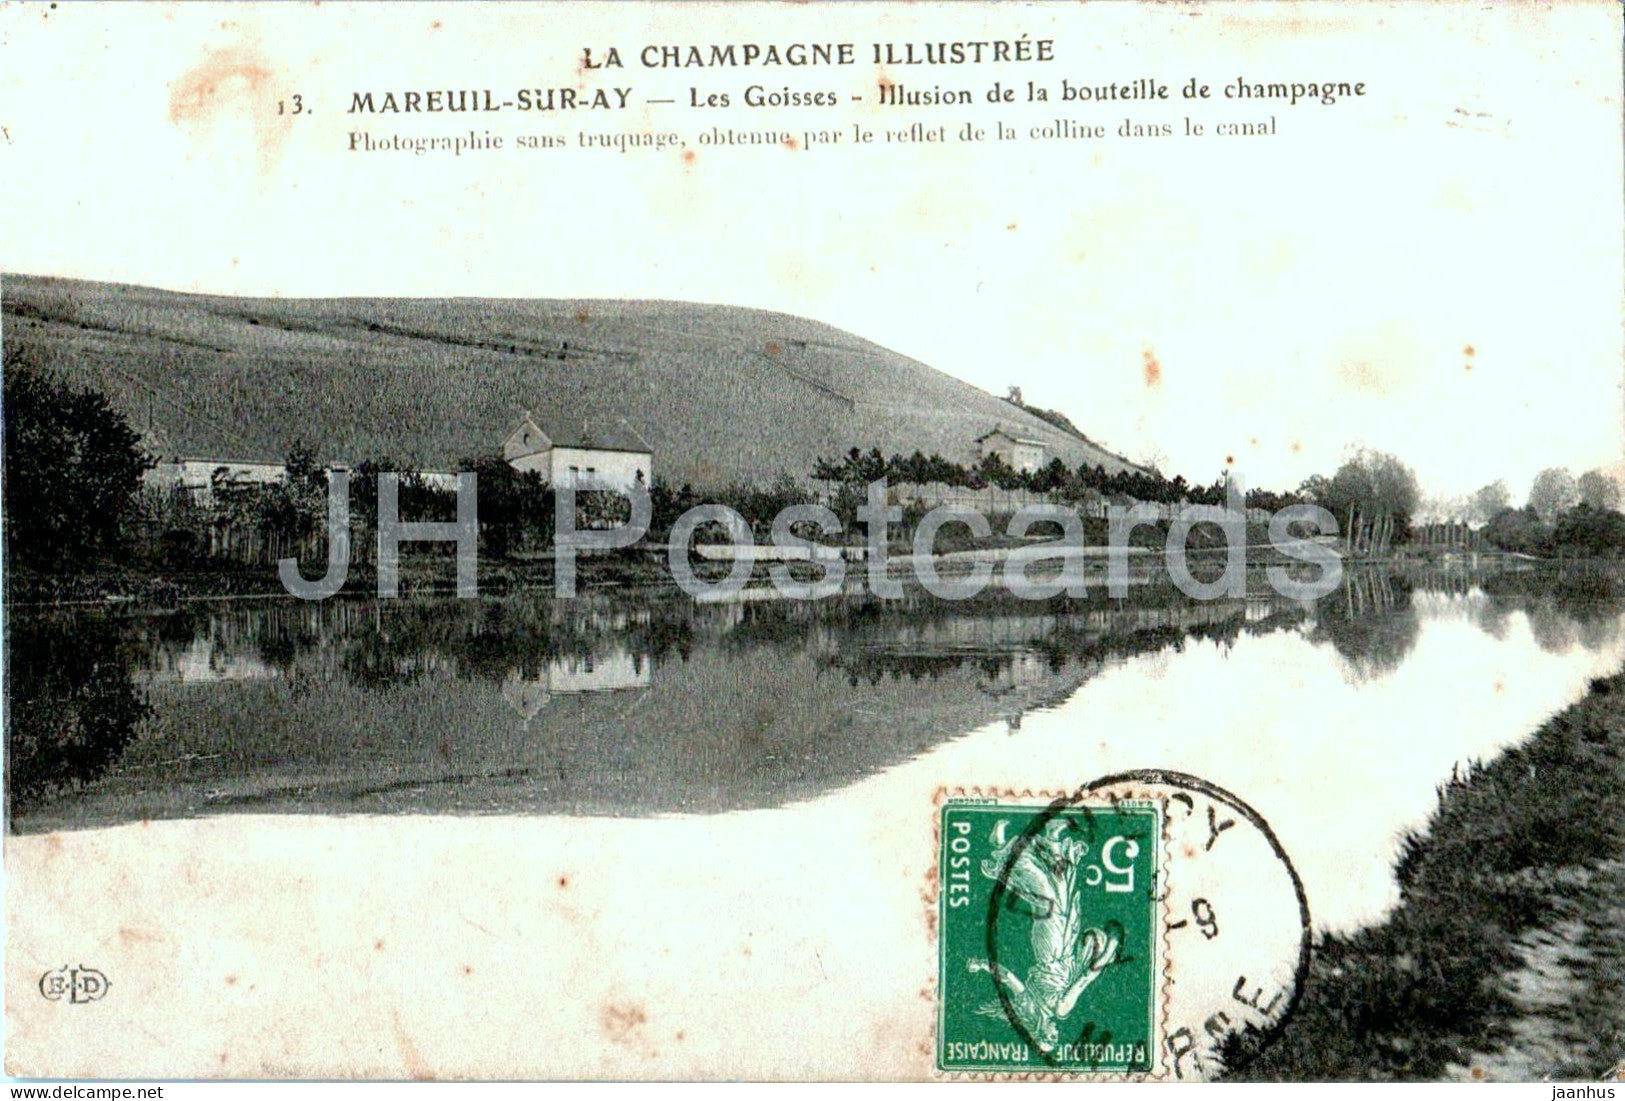 Mareuil sur Ay - Les Goisses - Illusion de la bouteille de champagne - 13 - old postcard - 1911 - France - used - JH Postcards